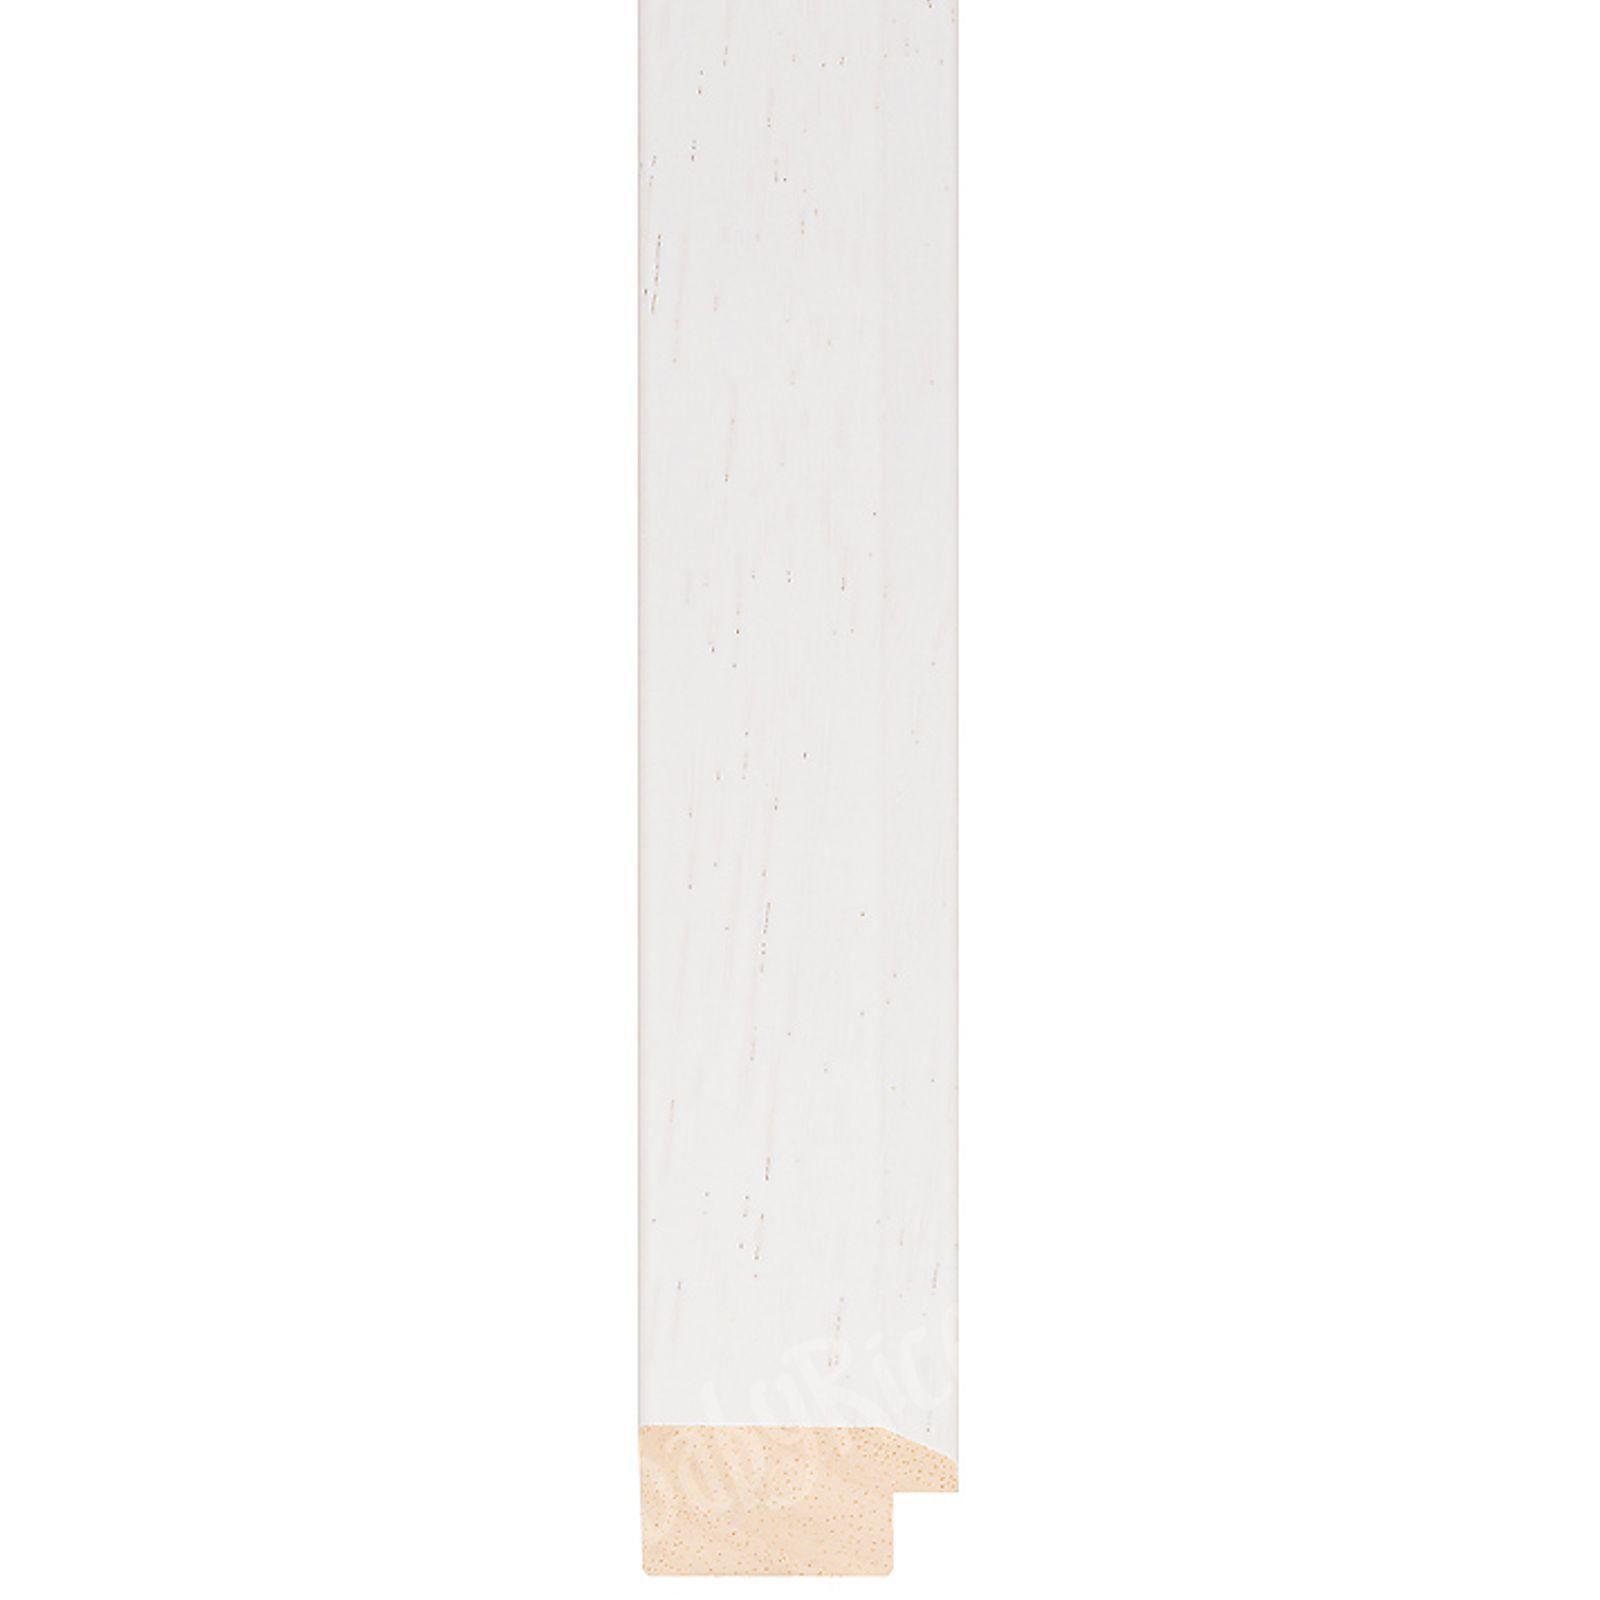 White frame wood